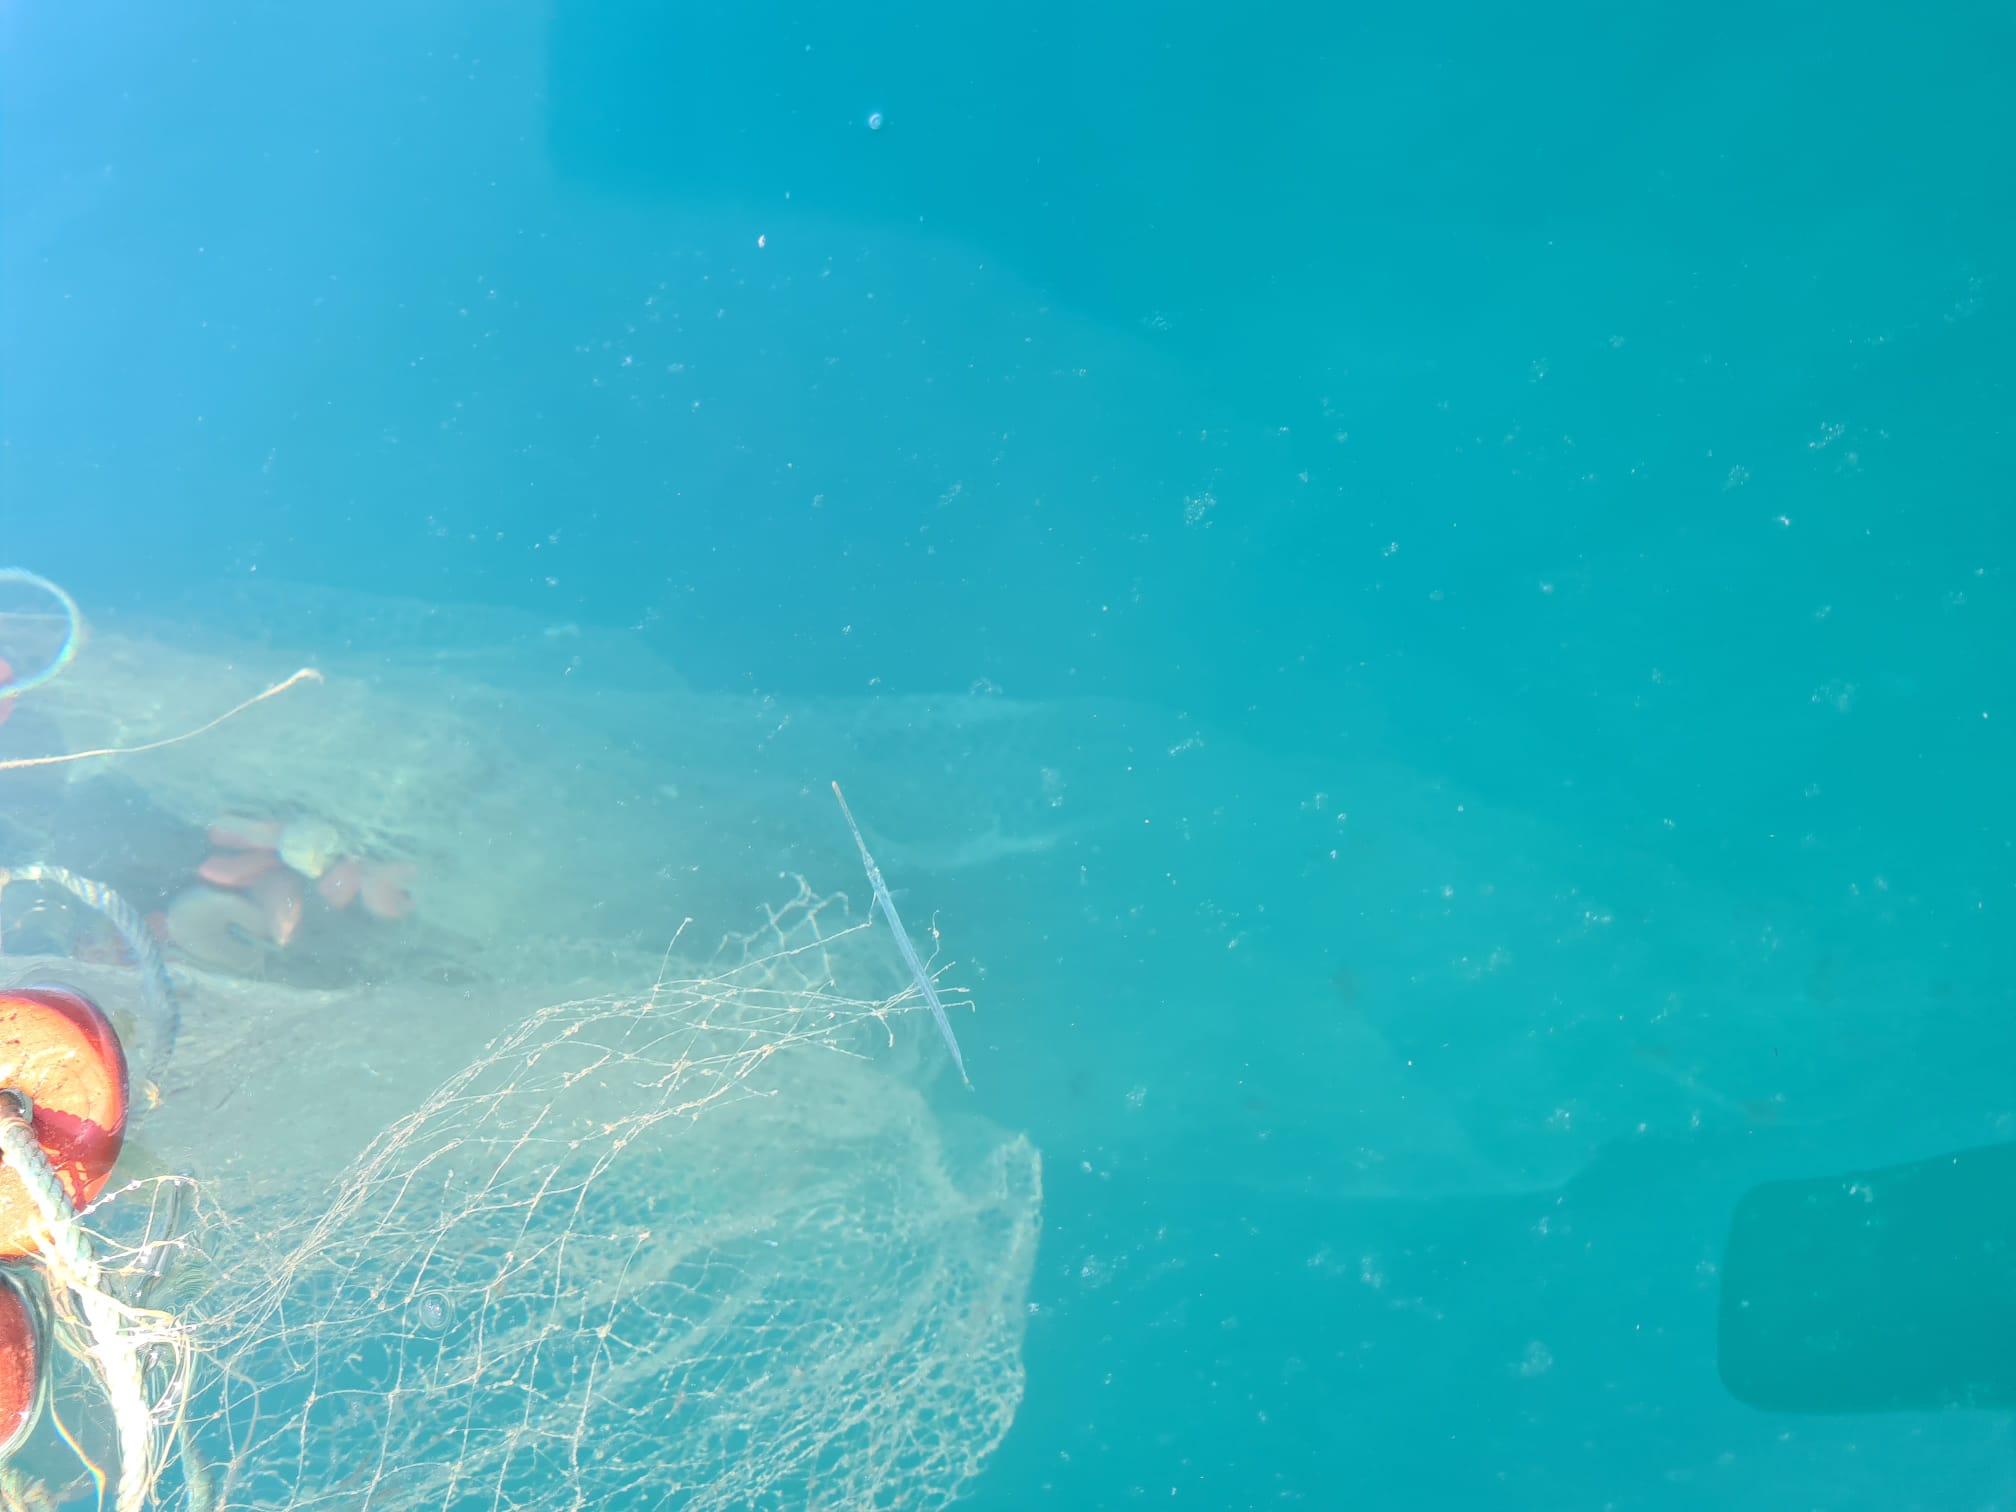 Las "redes asesinas" que están matando miles de peces en el Mar de Alborán.